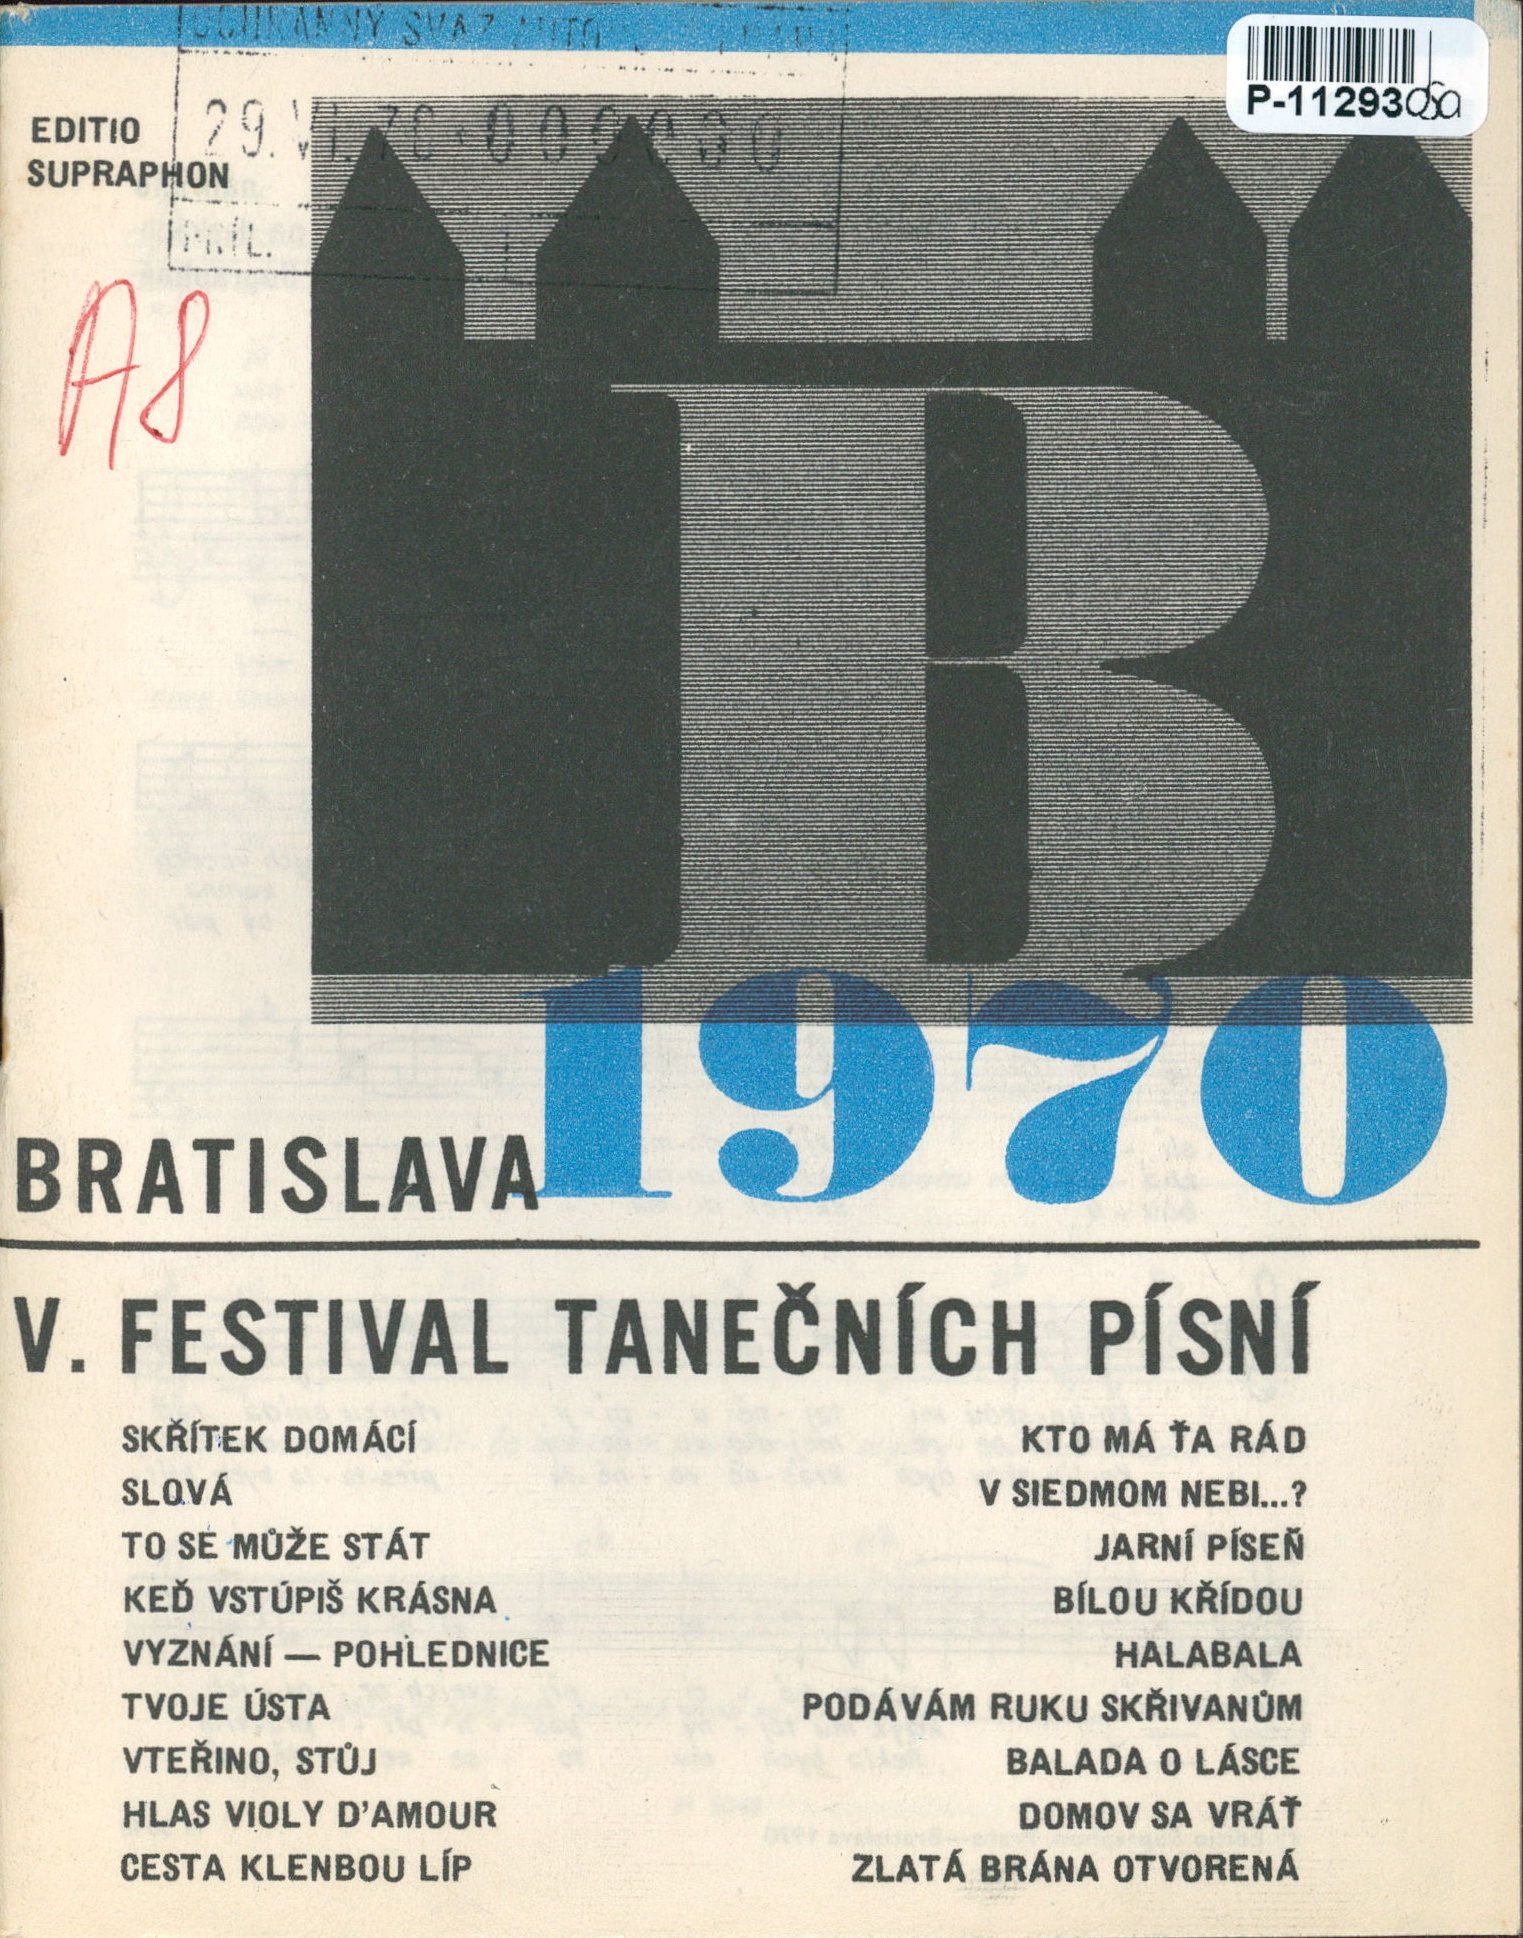 Bratislava 1970 - V. festival tanečních písní